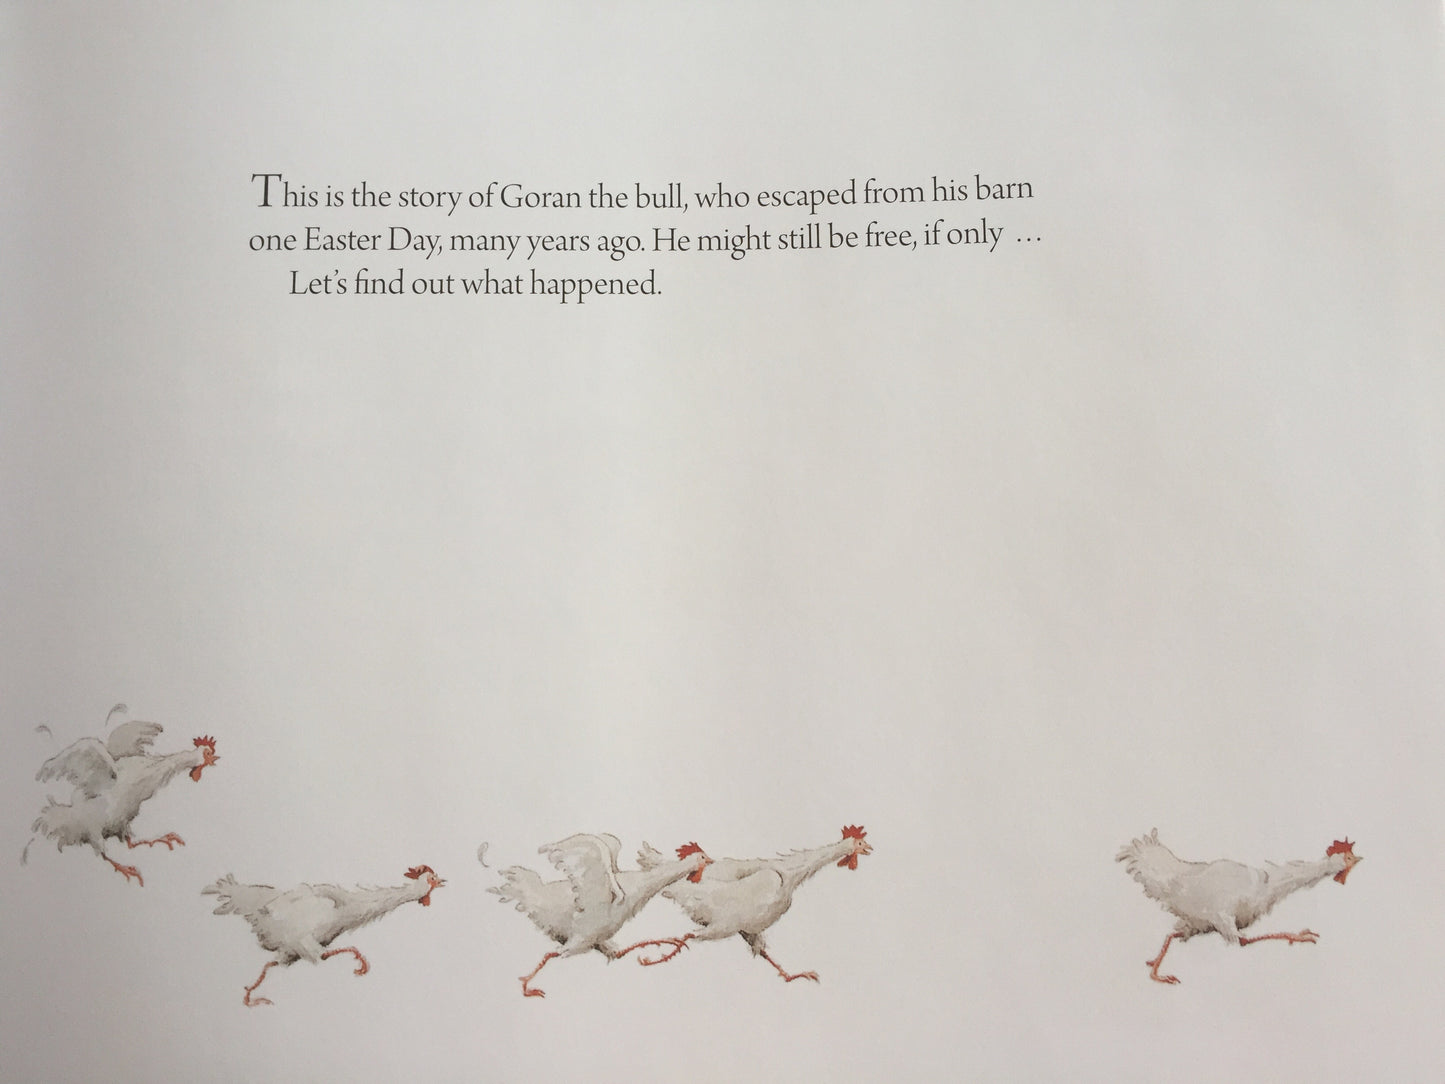 Children's Picture Book - GORAN'S GREAT ESCAPE